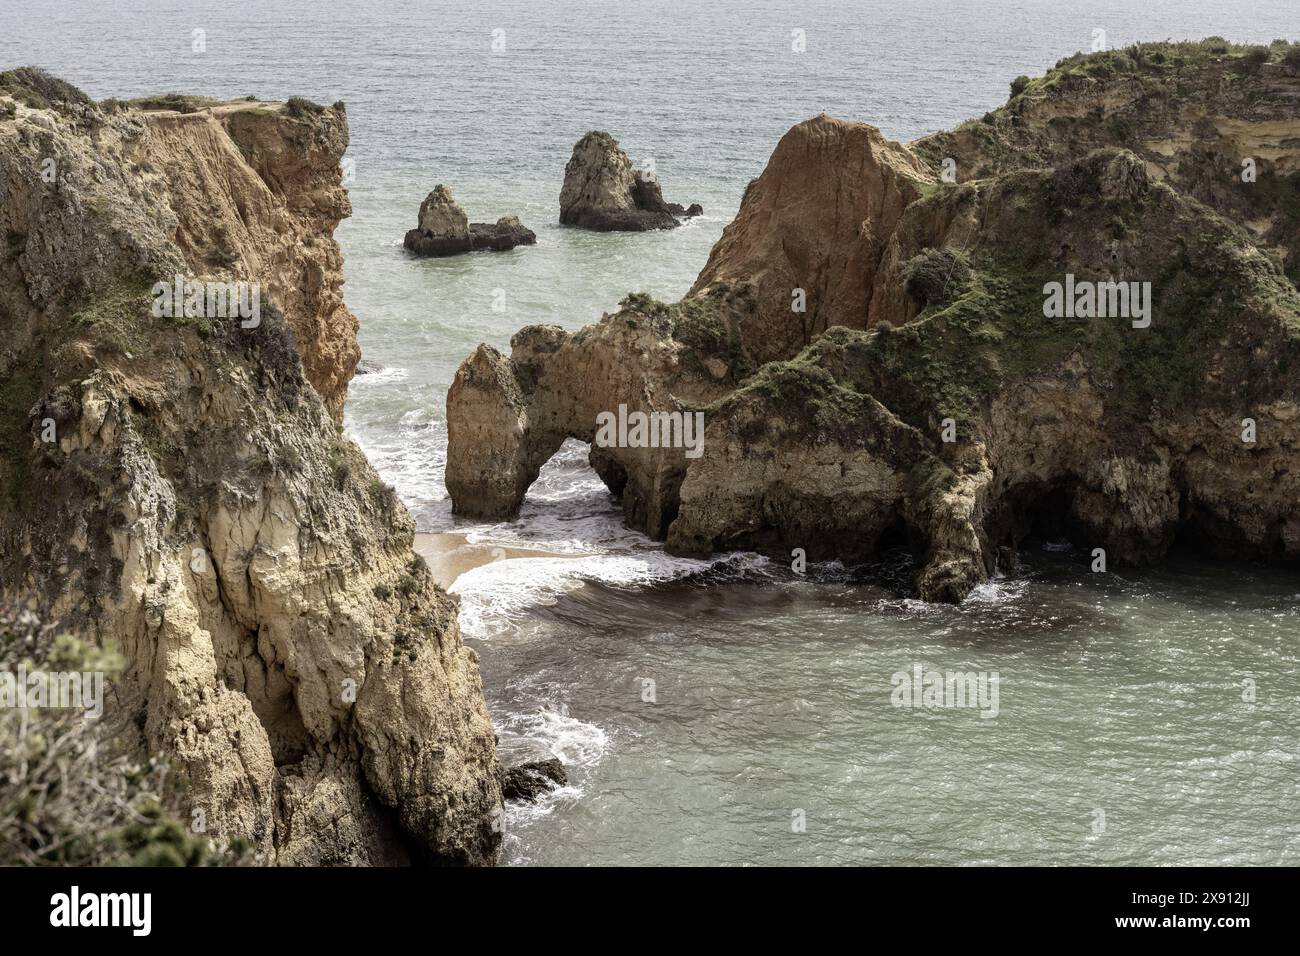 Atemberaubender Blick auf die Felsformationen und Meeresbögen der Küste in Portimao, Portugal. Die zerklüfteten Klippen und die verstreuten Meeresstapel schaffen ein dramatisches Bild Stockfoto